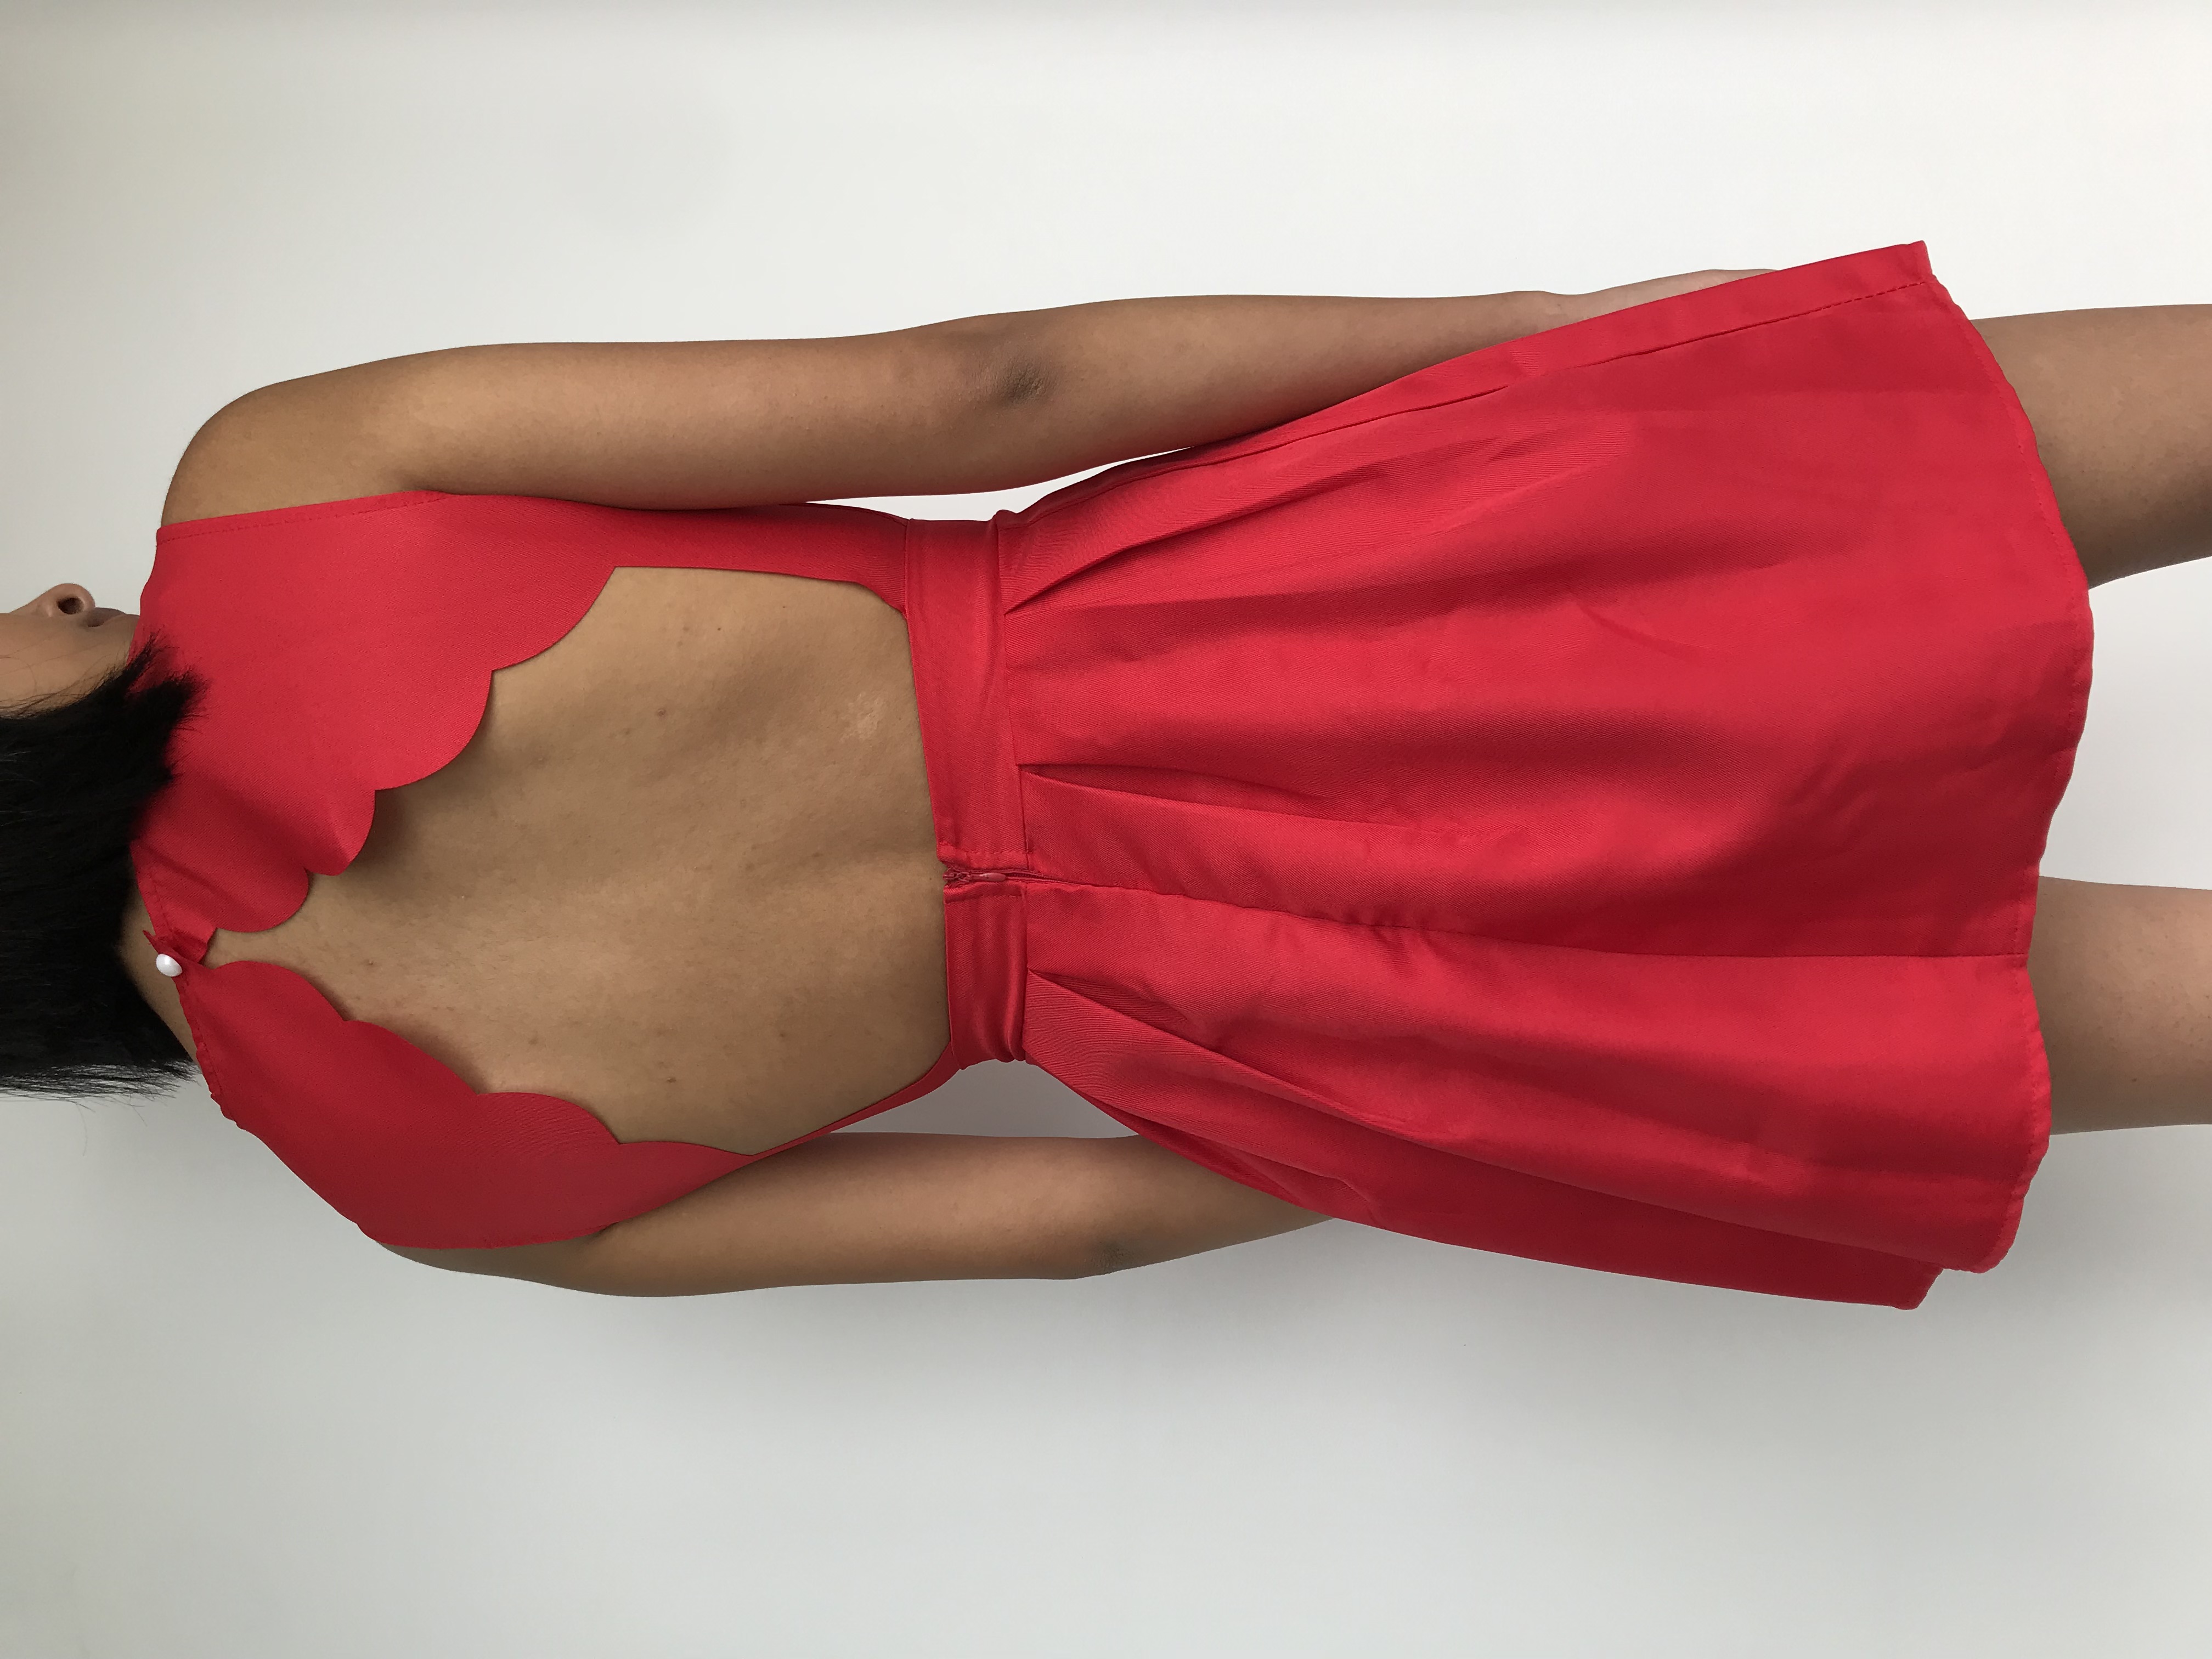 Vestido rojo, tela tipo drill, pliegues en la falda, abertura, botón y cierre posterior. Nuevo con etiqueta
Talla XS